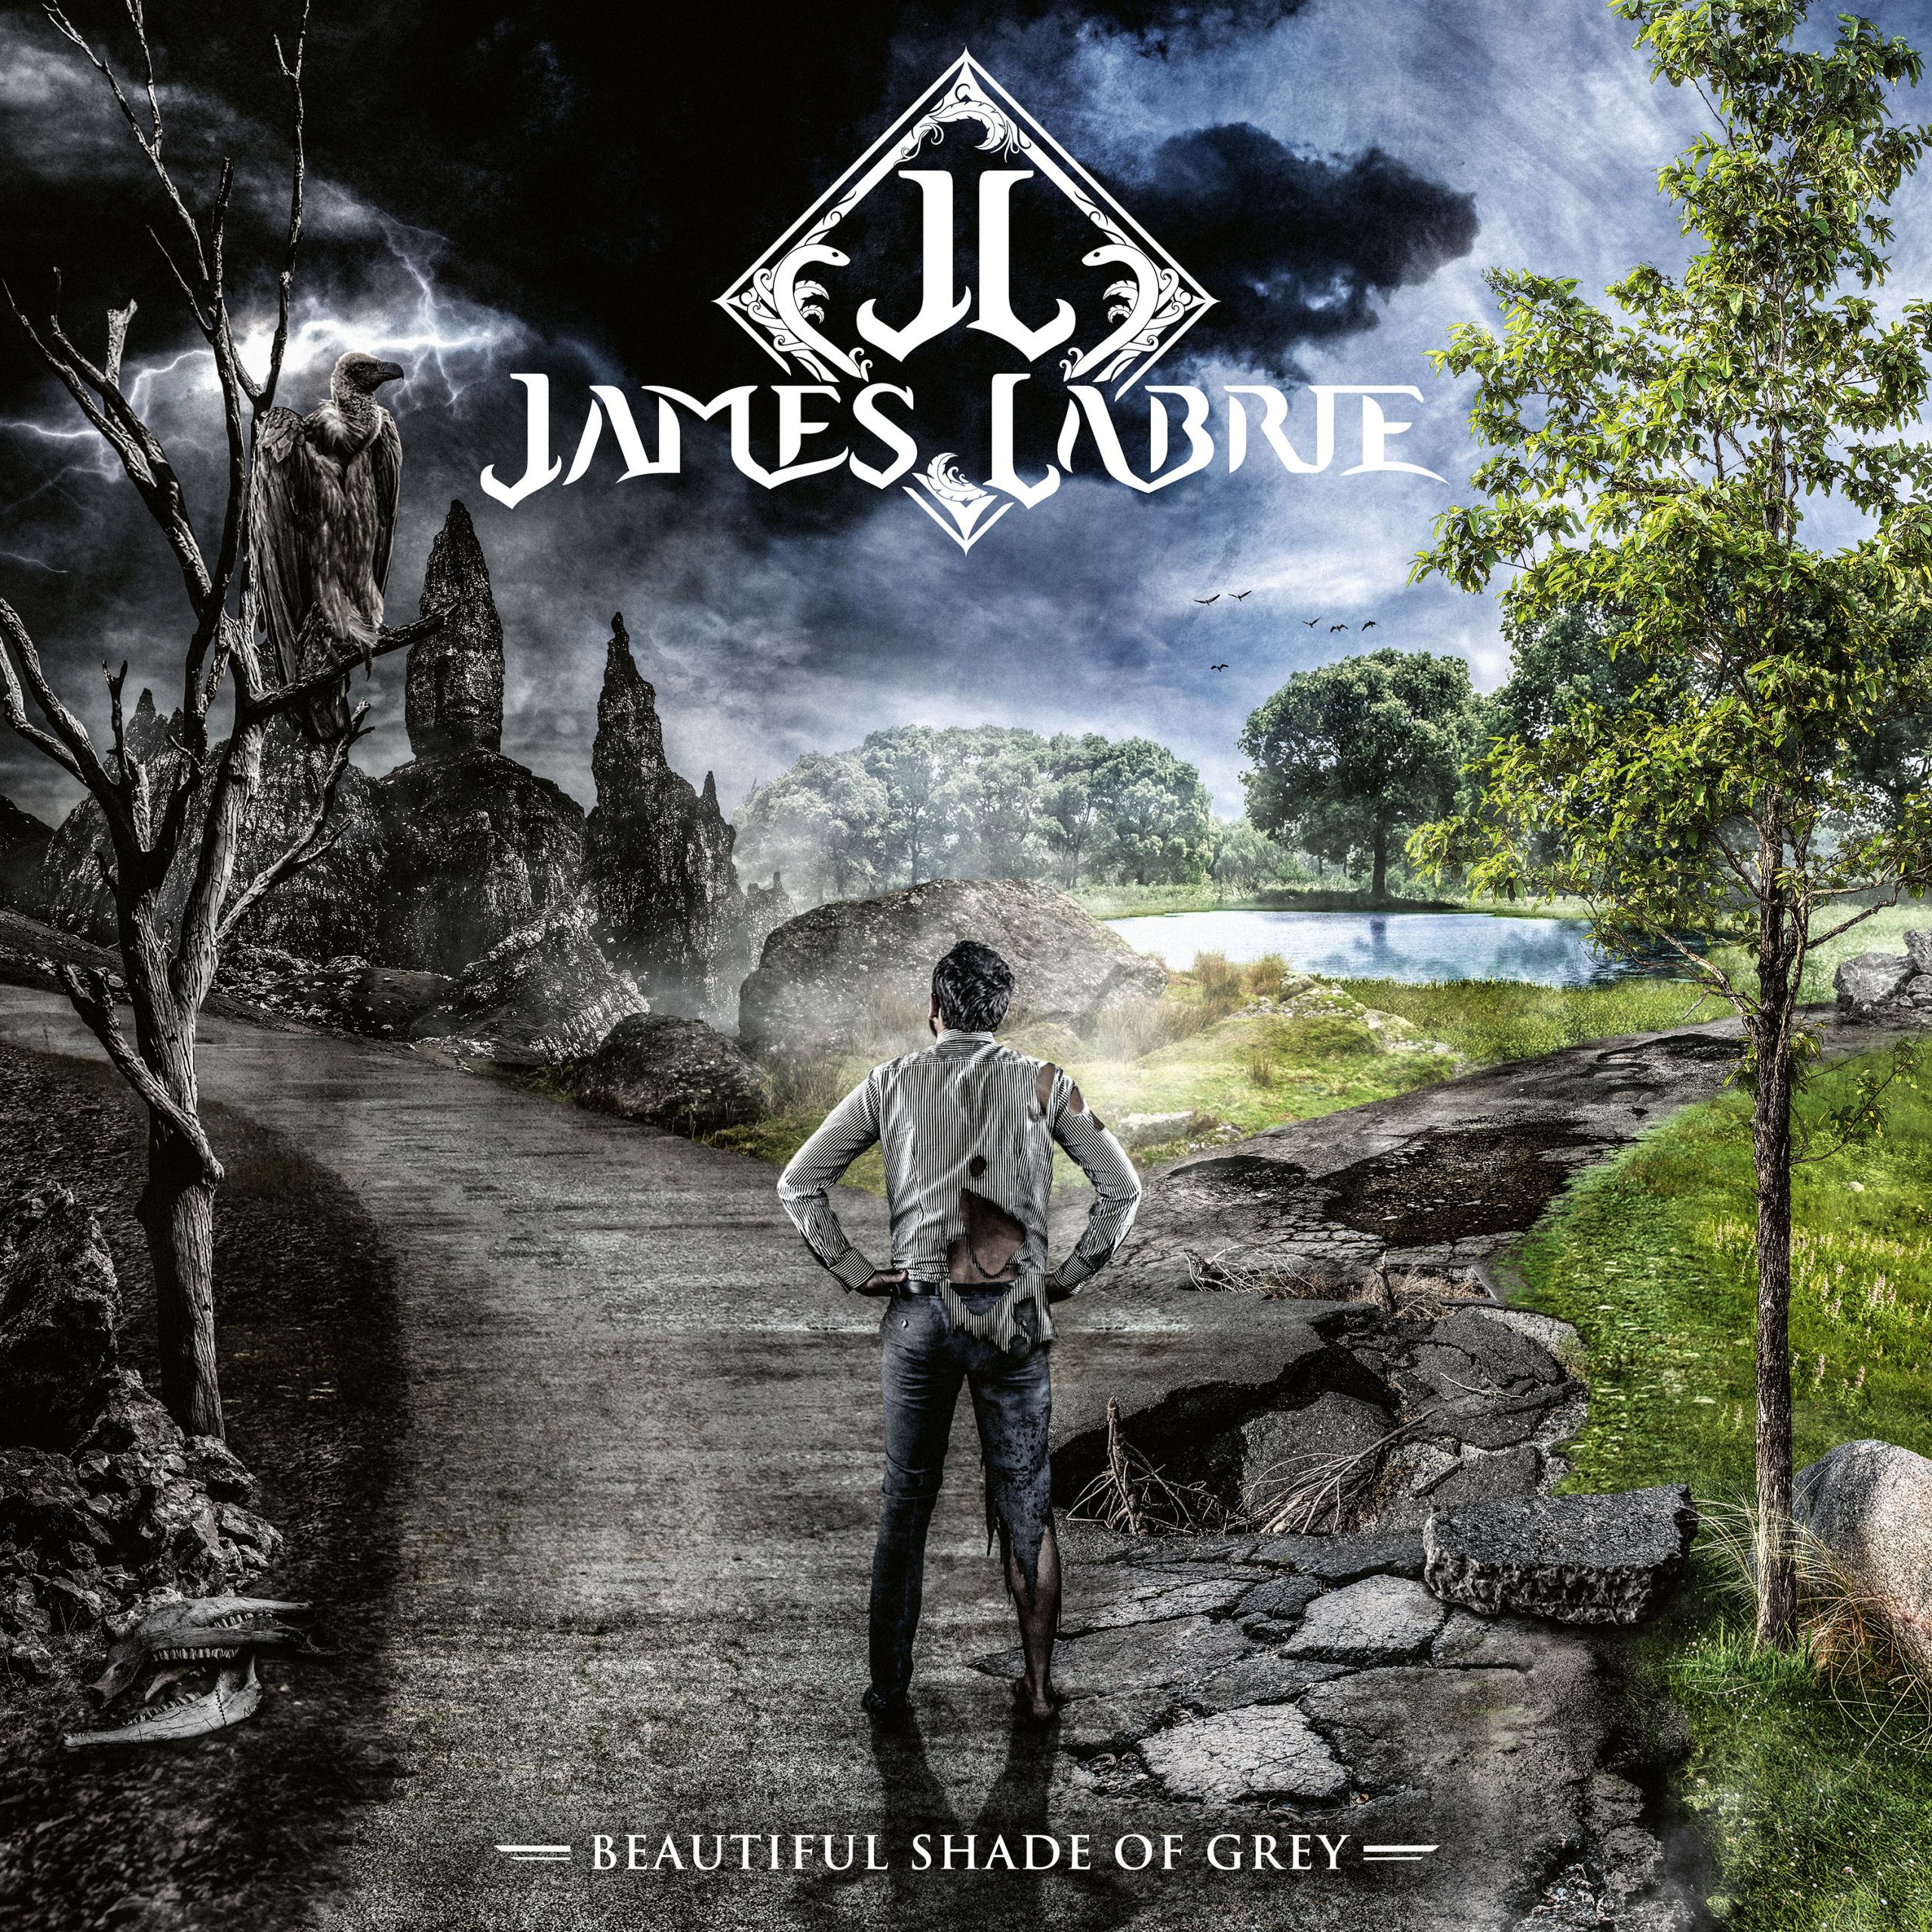 Entretien avec James LaBrie, chanteur de Dream Theater, pour son nouvel album solo